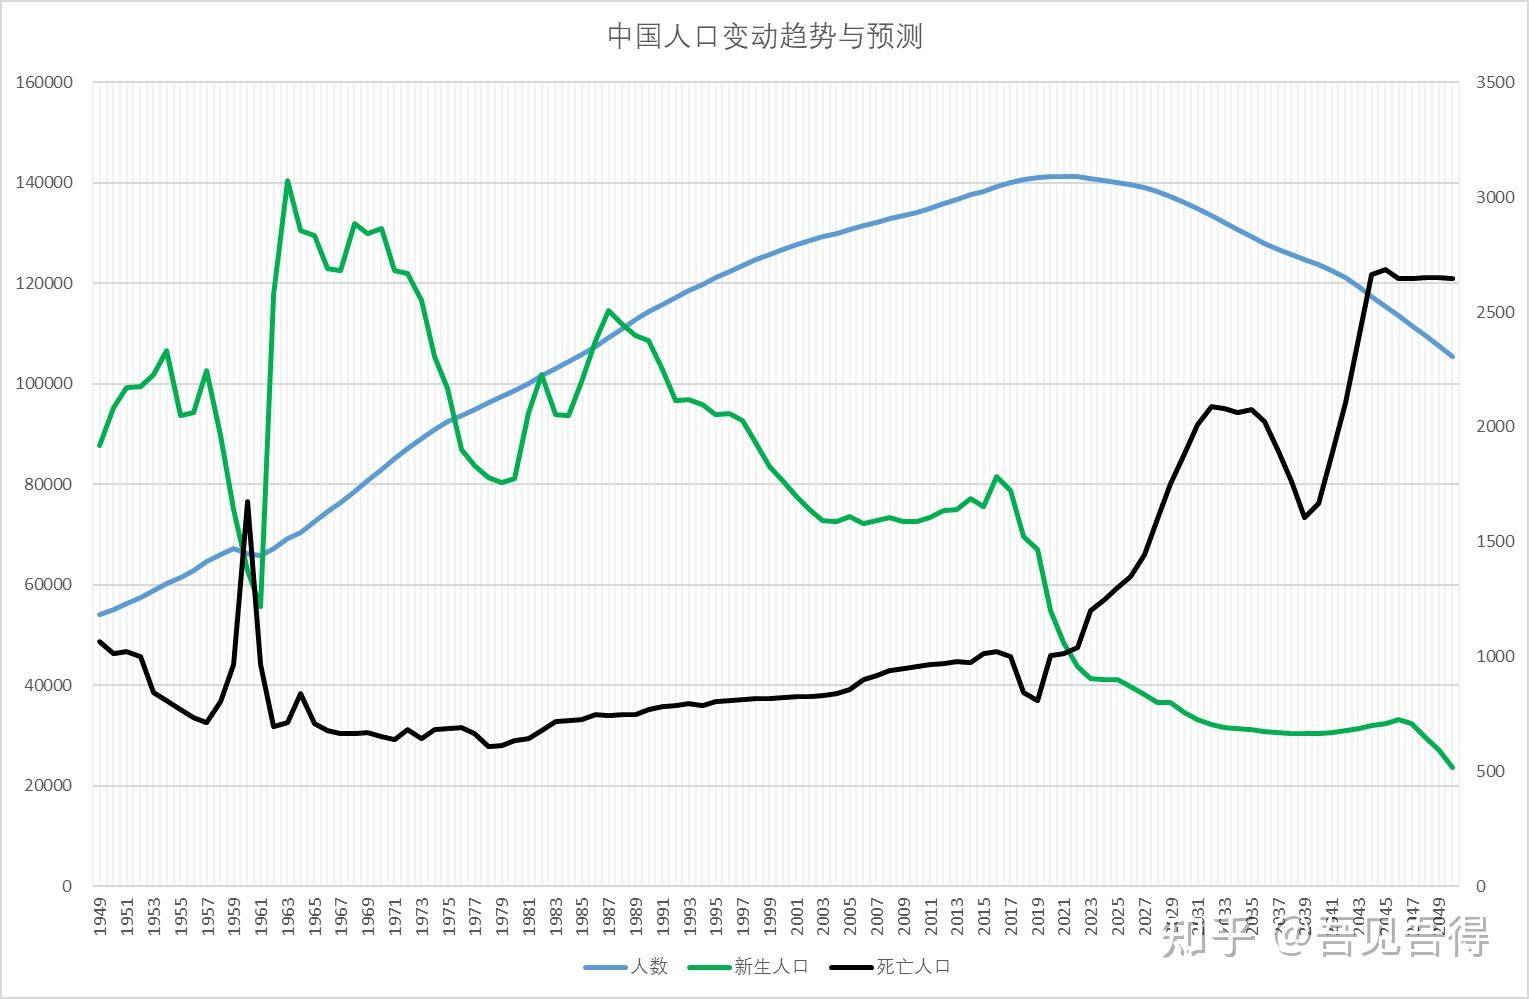 二,中国人口变化趋势